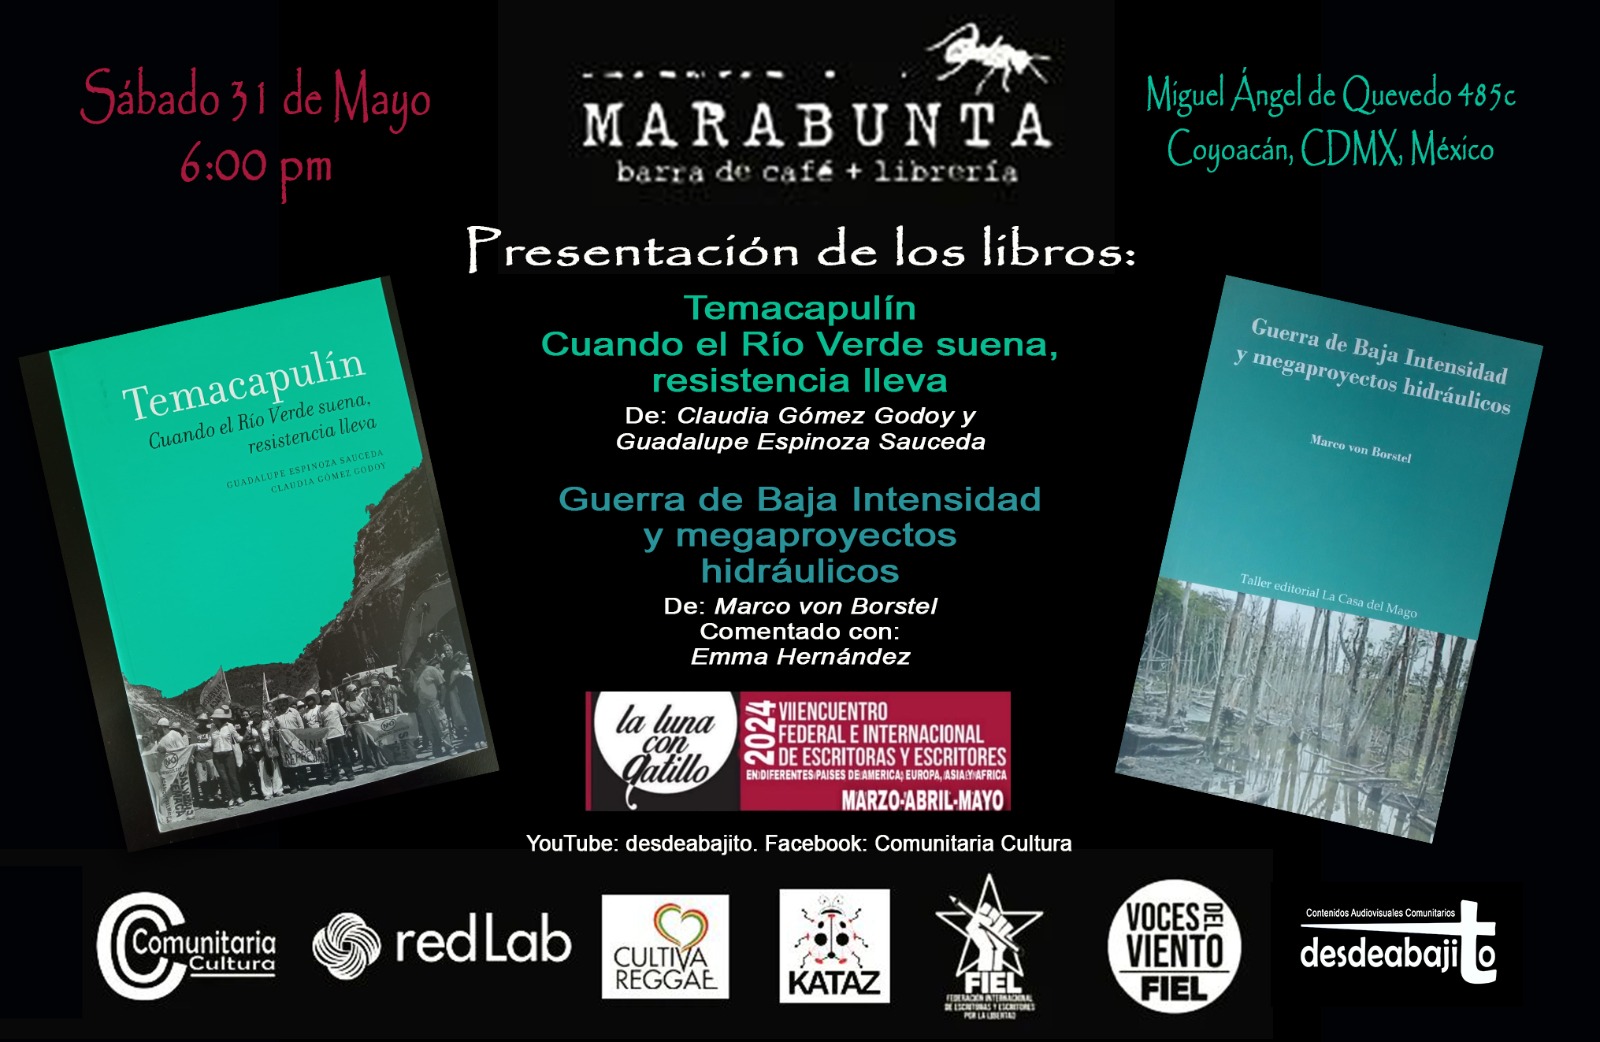 Libros de Marco von Borstel, José Riaza, Claudia Gómez Godoy y Guadalupe Espinoza Sauceda serán presentados en “Marabunta Café”